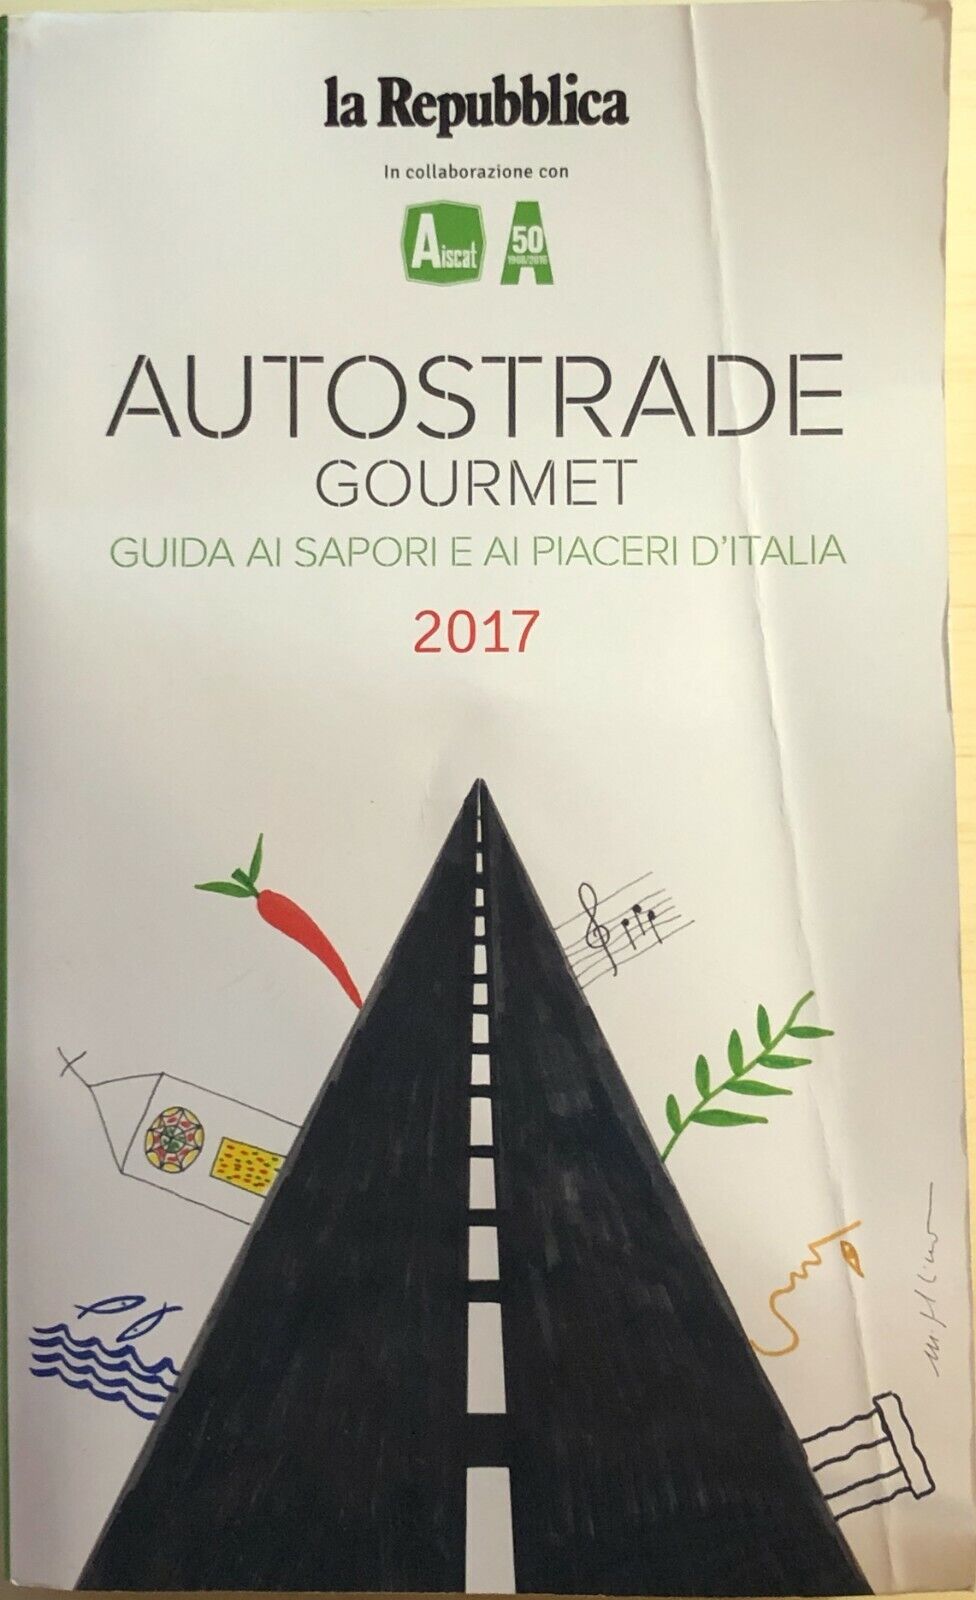 Autostrade gourmet 2017 di Aiscat, 2017, La Repubblica